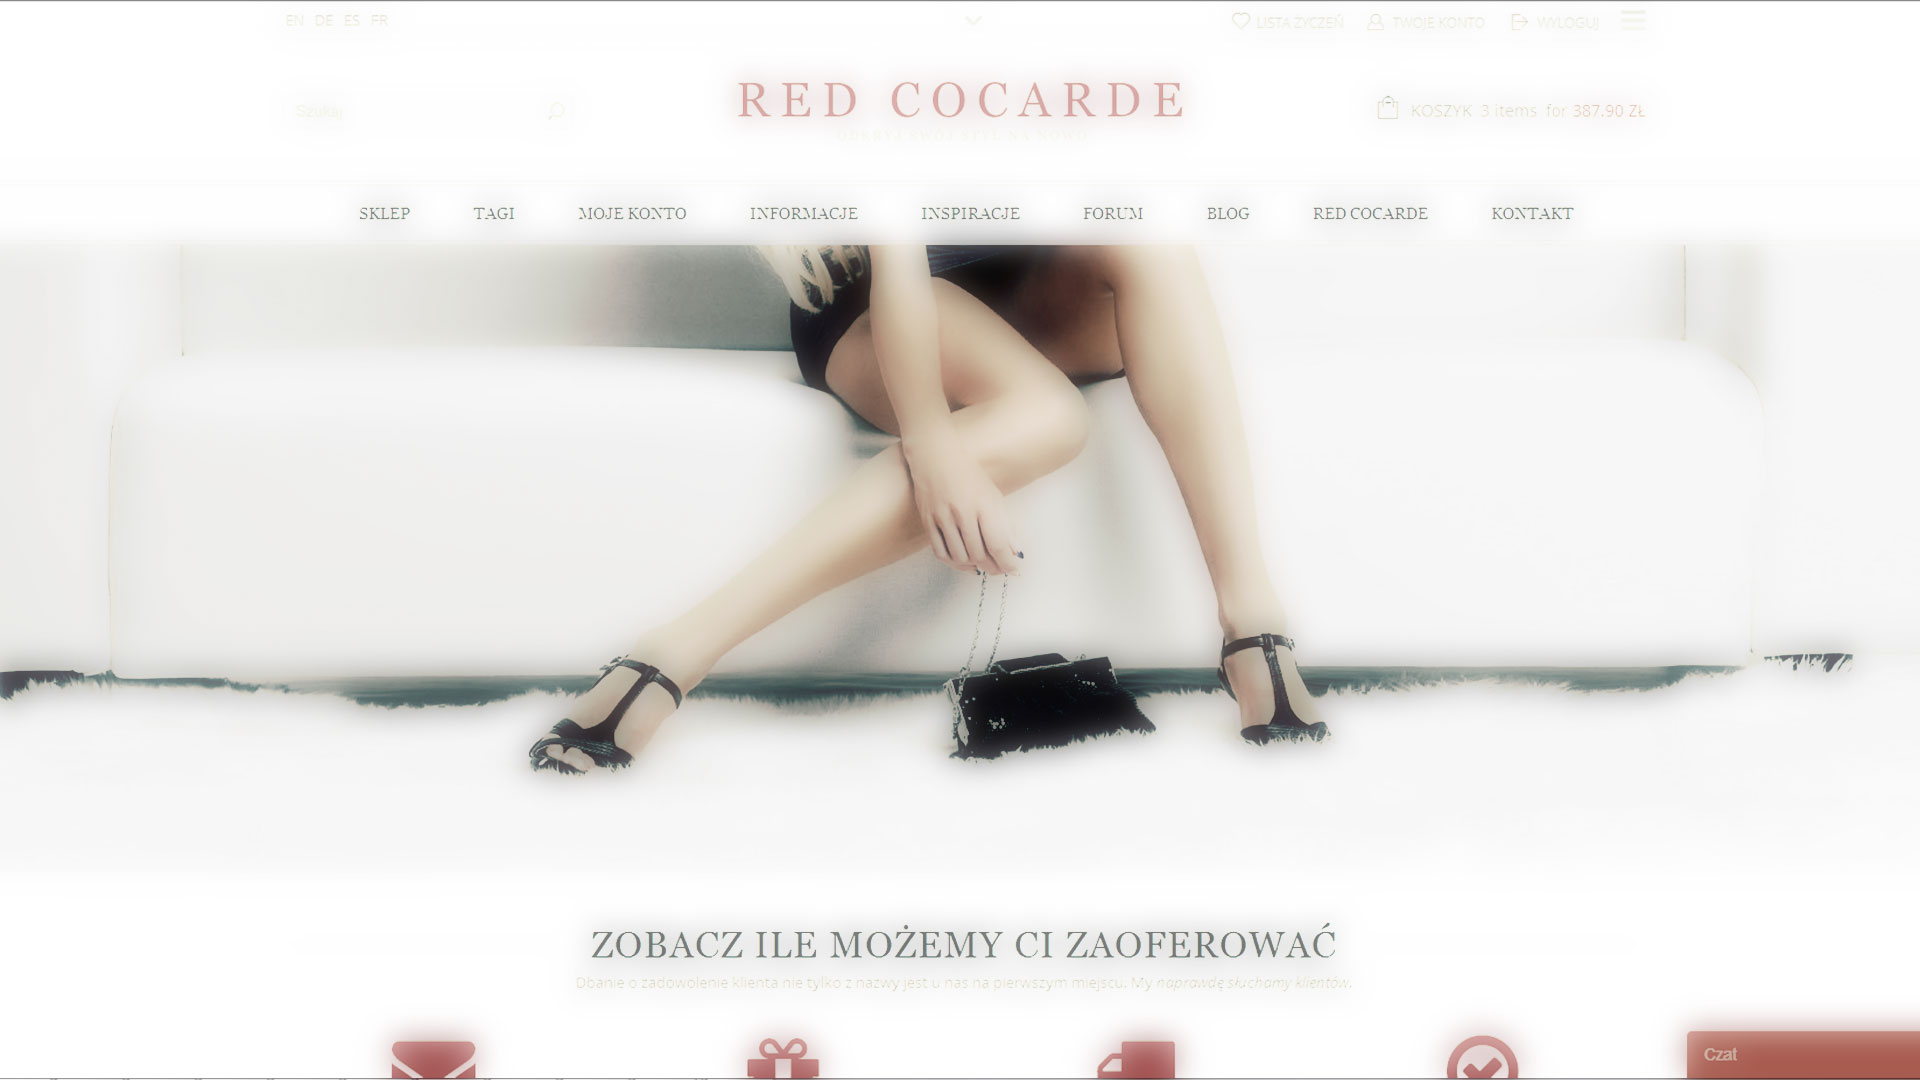 Red Cocarde - modne i stylowe torebki oraz dodatki dla kobiet